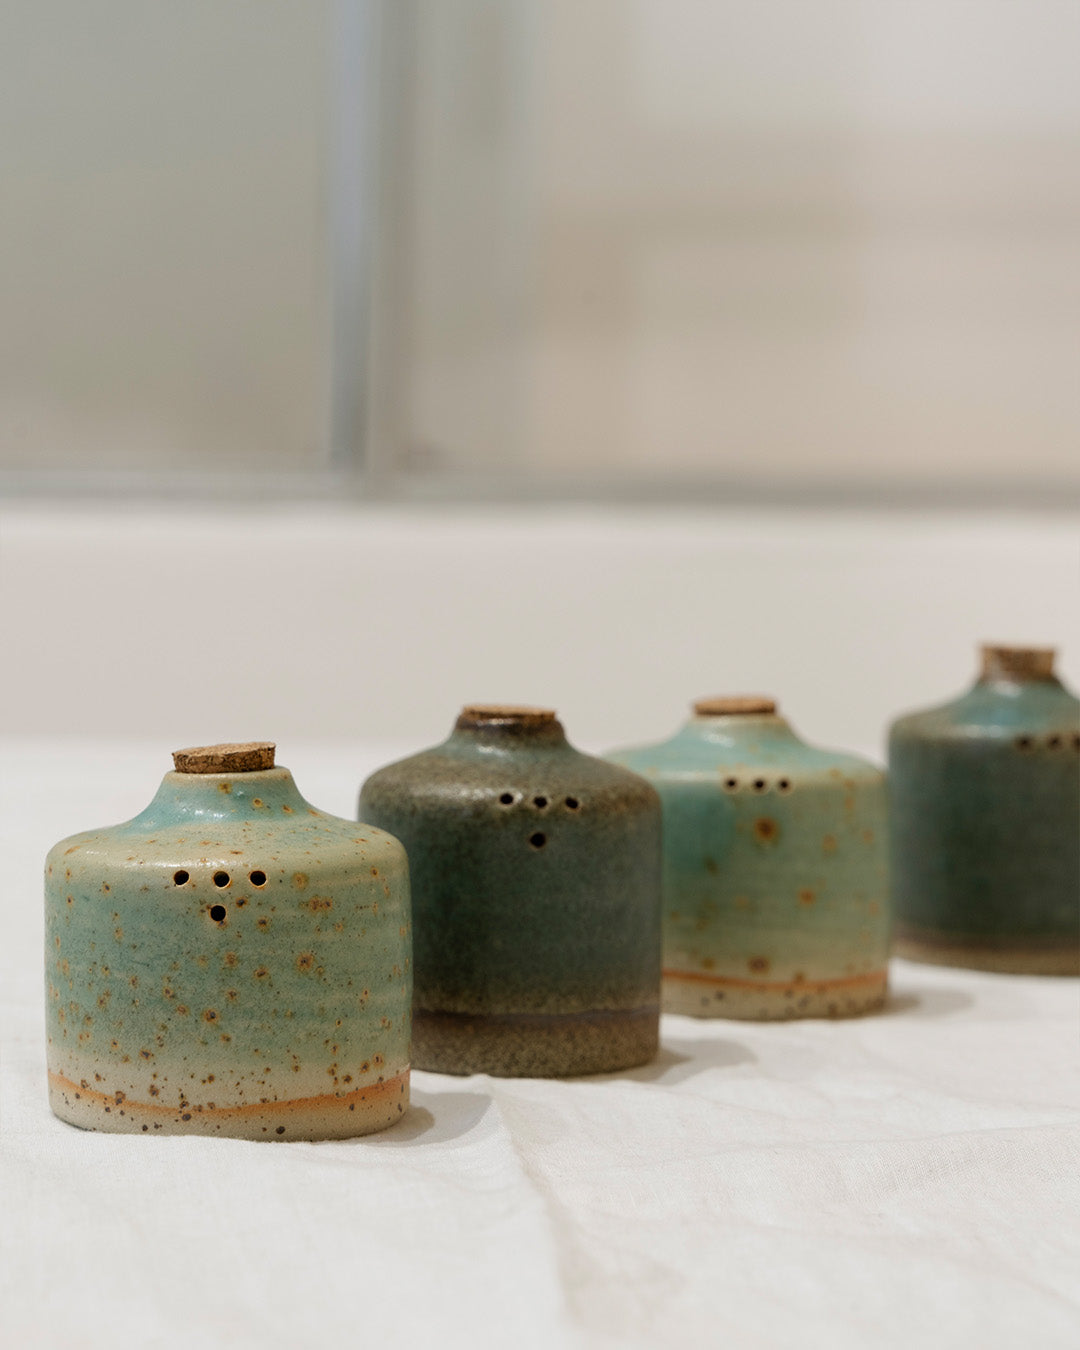 Ceramic handcrafted salt and pepper cruets